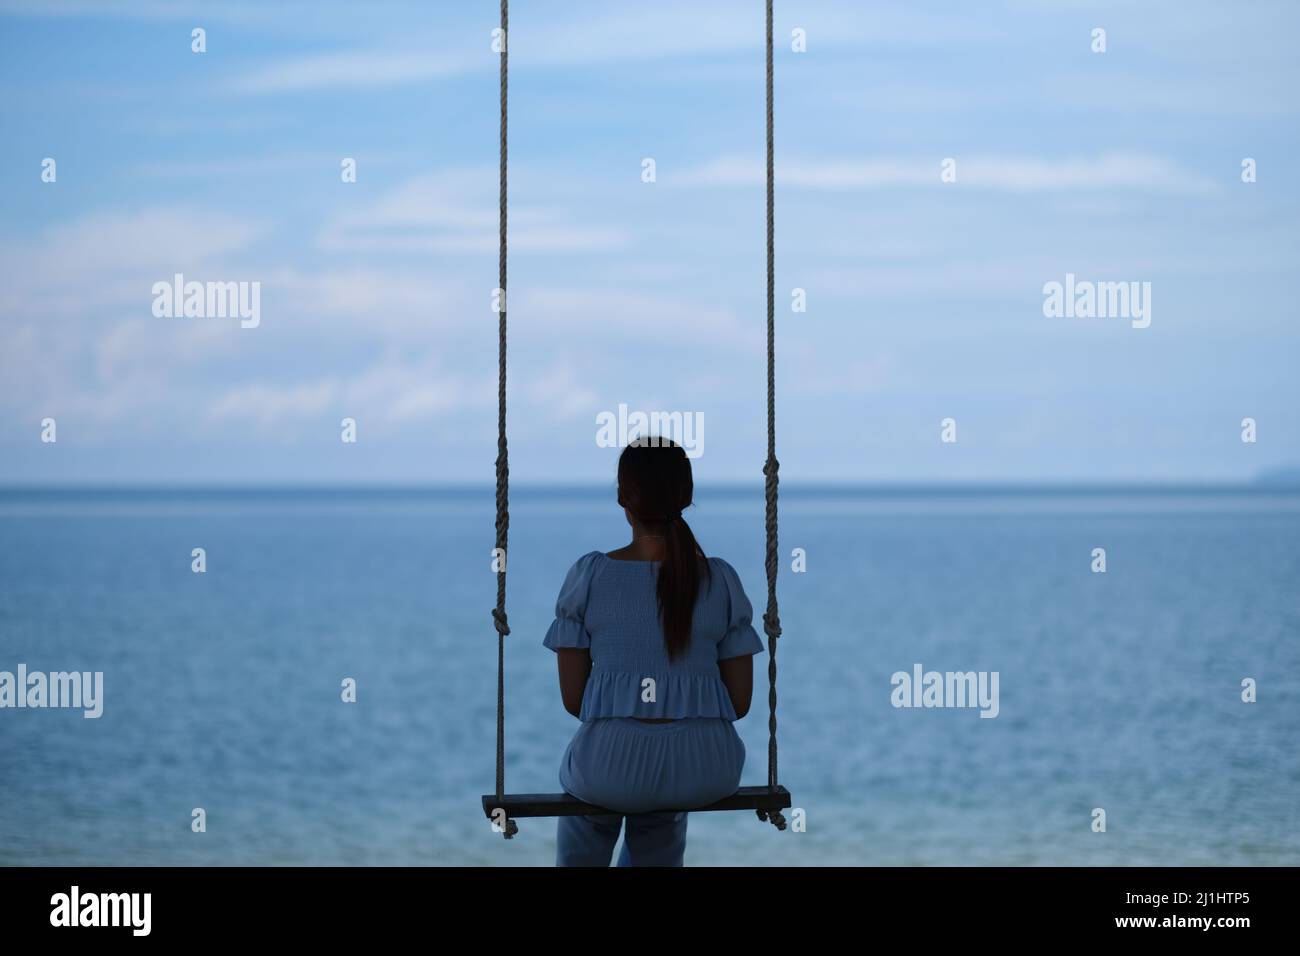 Allein am Meer: Die junge Frau, von hinten betrachtet, entspannt sich auf einer Schaukel mit einer schönen, ruhigen Meereslandschaft vor sich Stockfoto